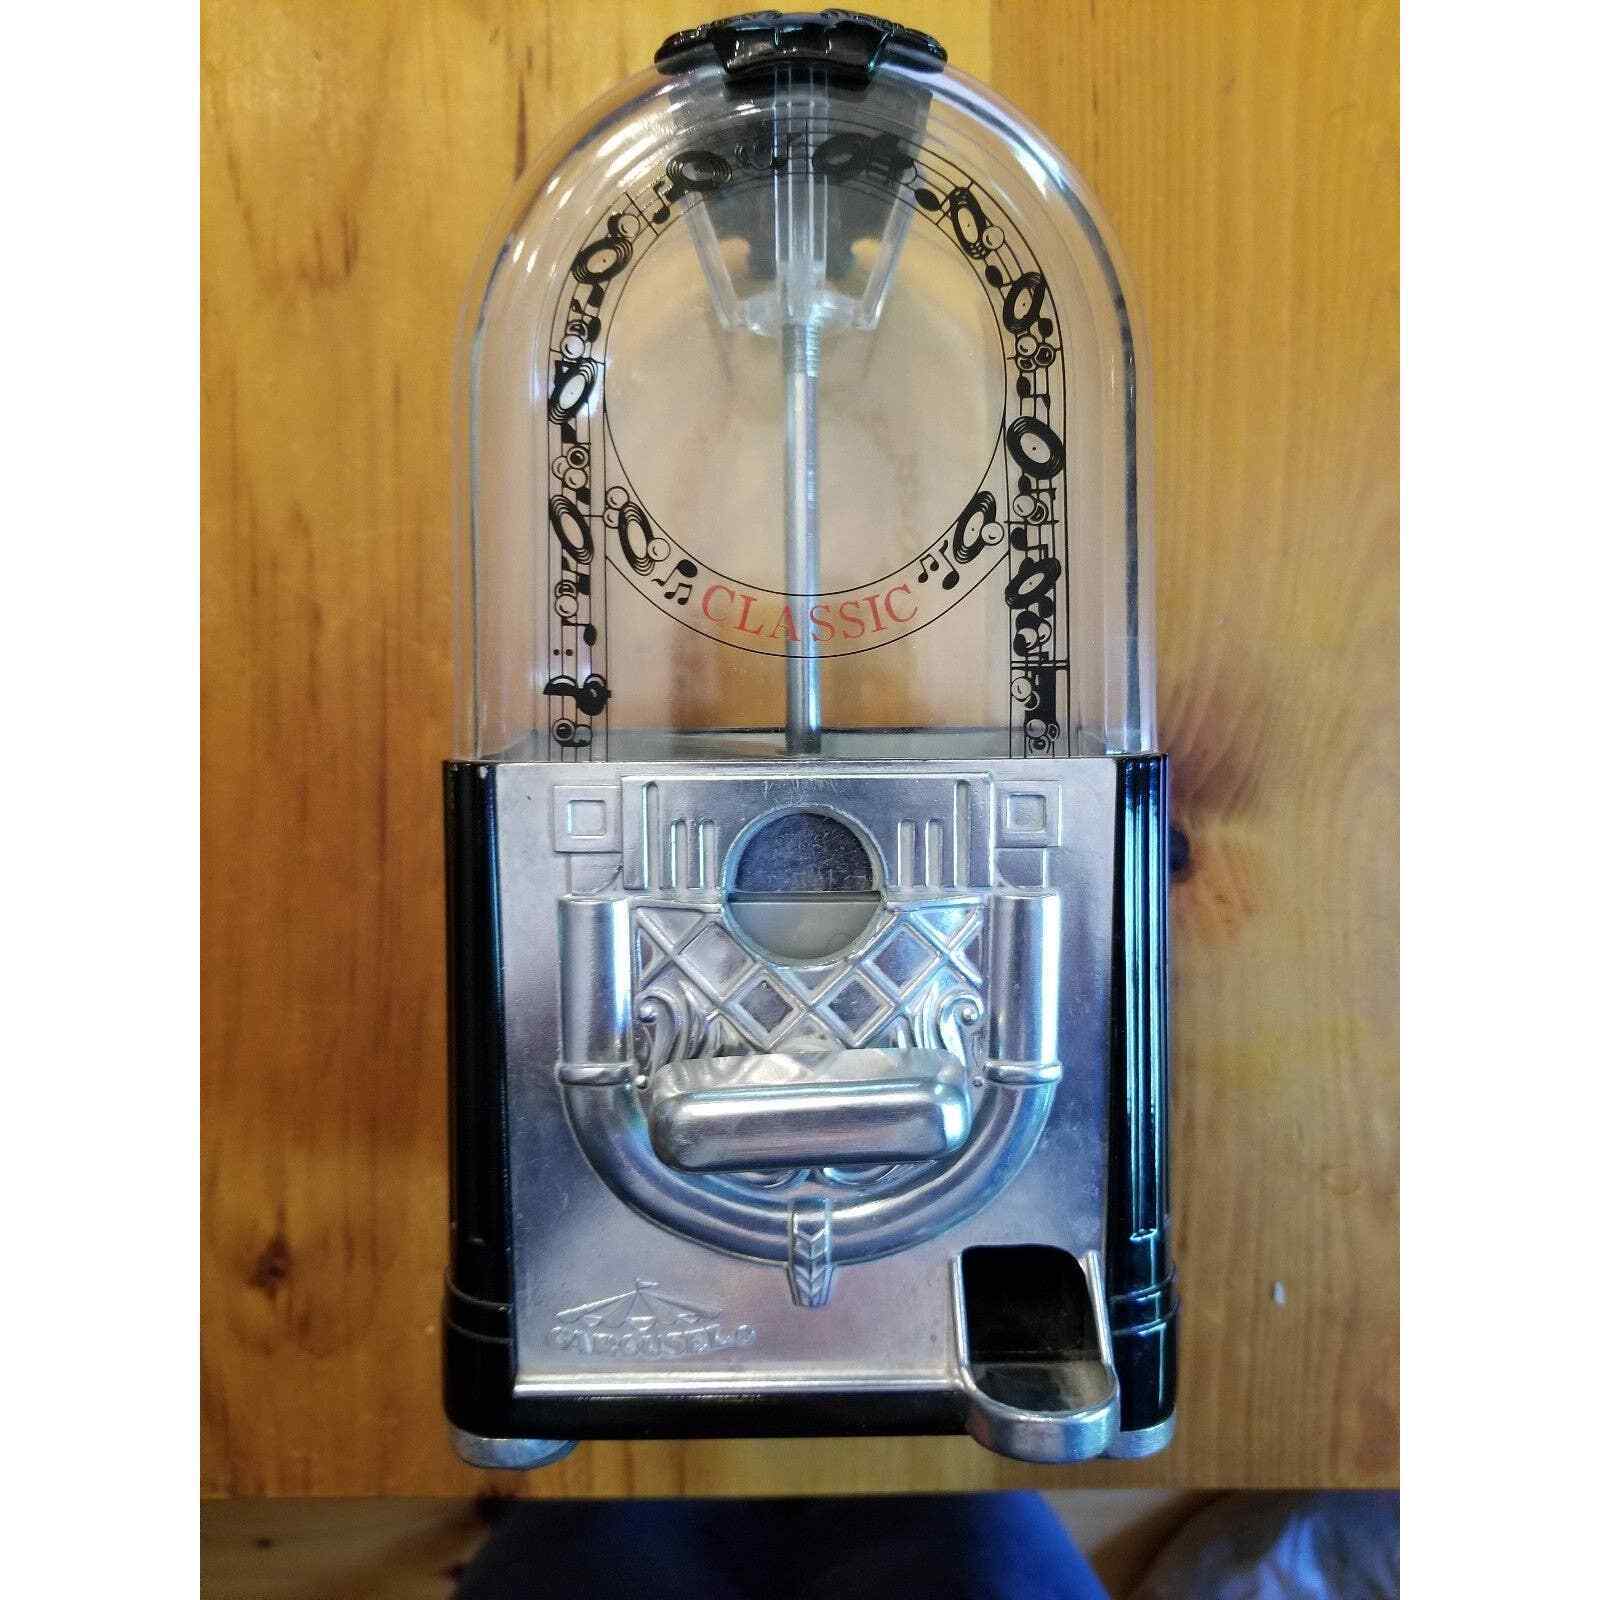 Retro Carousel Jukebox Gumball Machine 10.5 inch